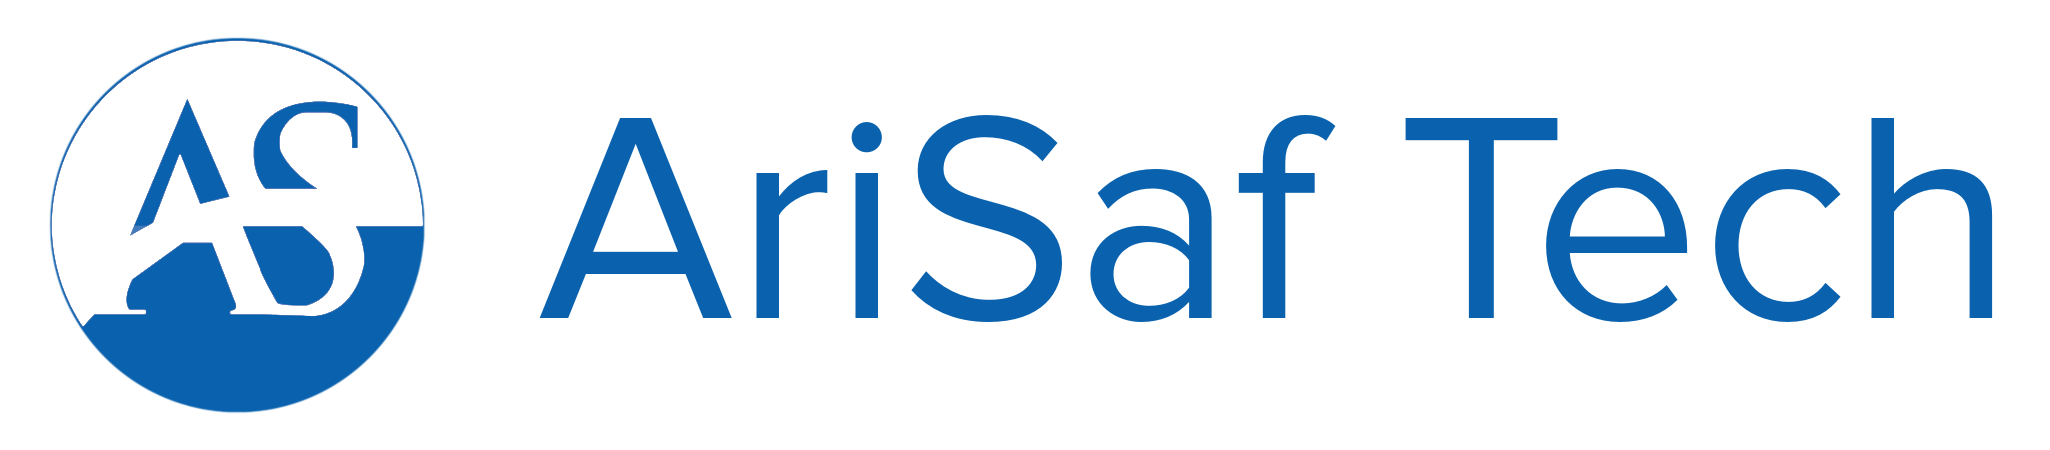 AriSaf Tech Ltd.